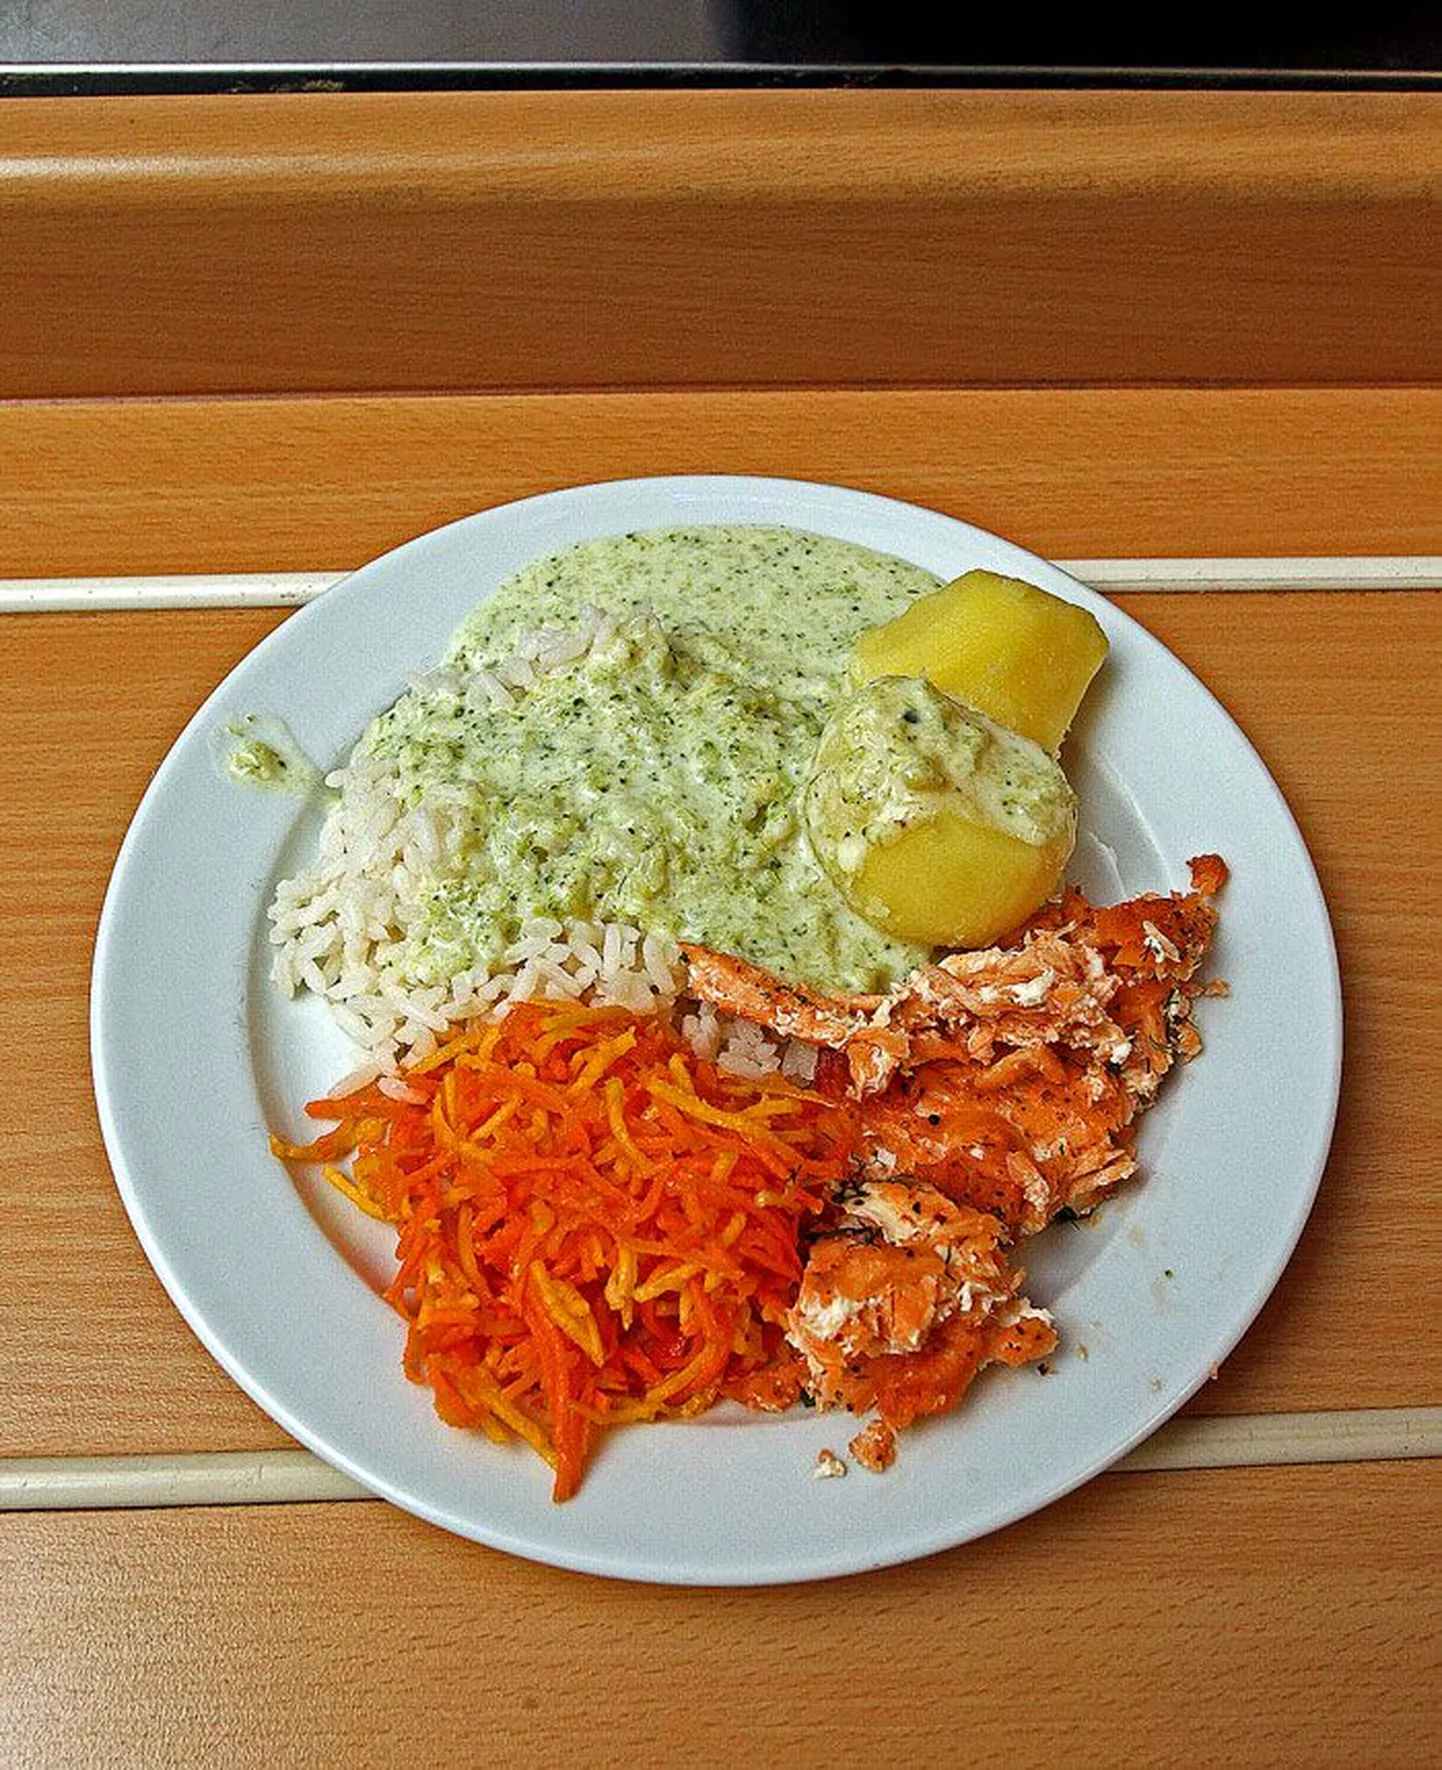 Kommerts-gümnaasium
• Ahjulõhe brokoli-koorekastmes, keskmine hinne 7,6
• Puuviljakissell vahukoorega (eelmise päeva menüüst), keskmine hinne 8,6
• Kõikide kommertsgümnaasiumi lõunate keskmine hinne 6,7
• Toitlustaja Baltic Restaurants 
Estonia